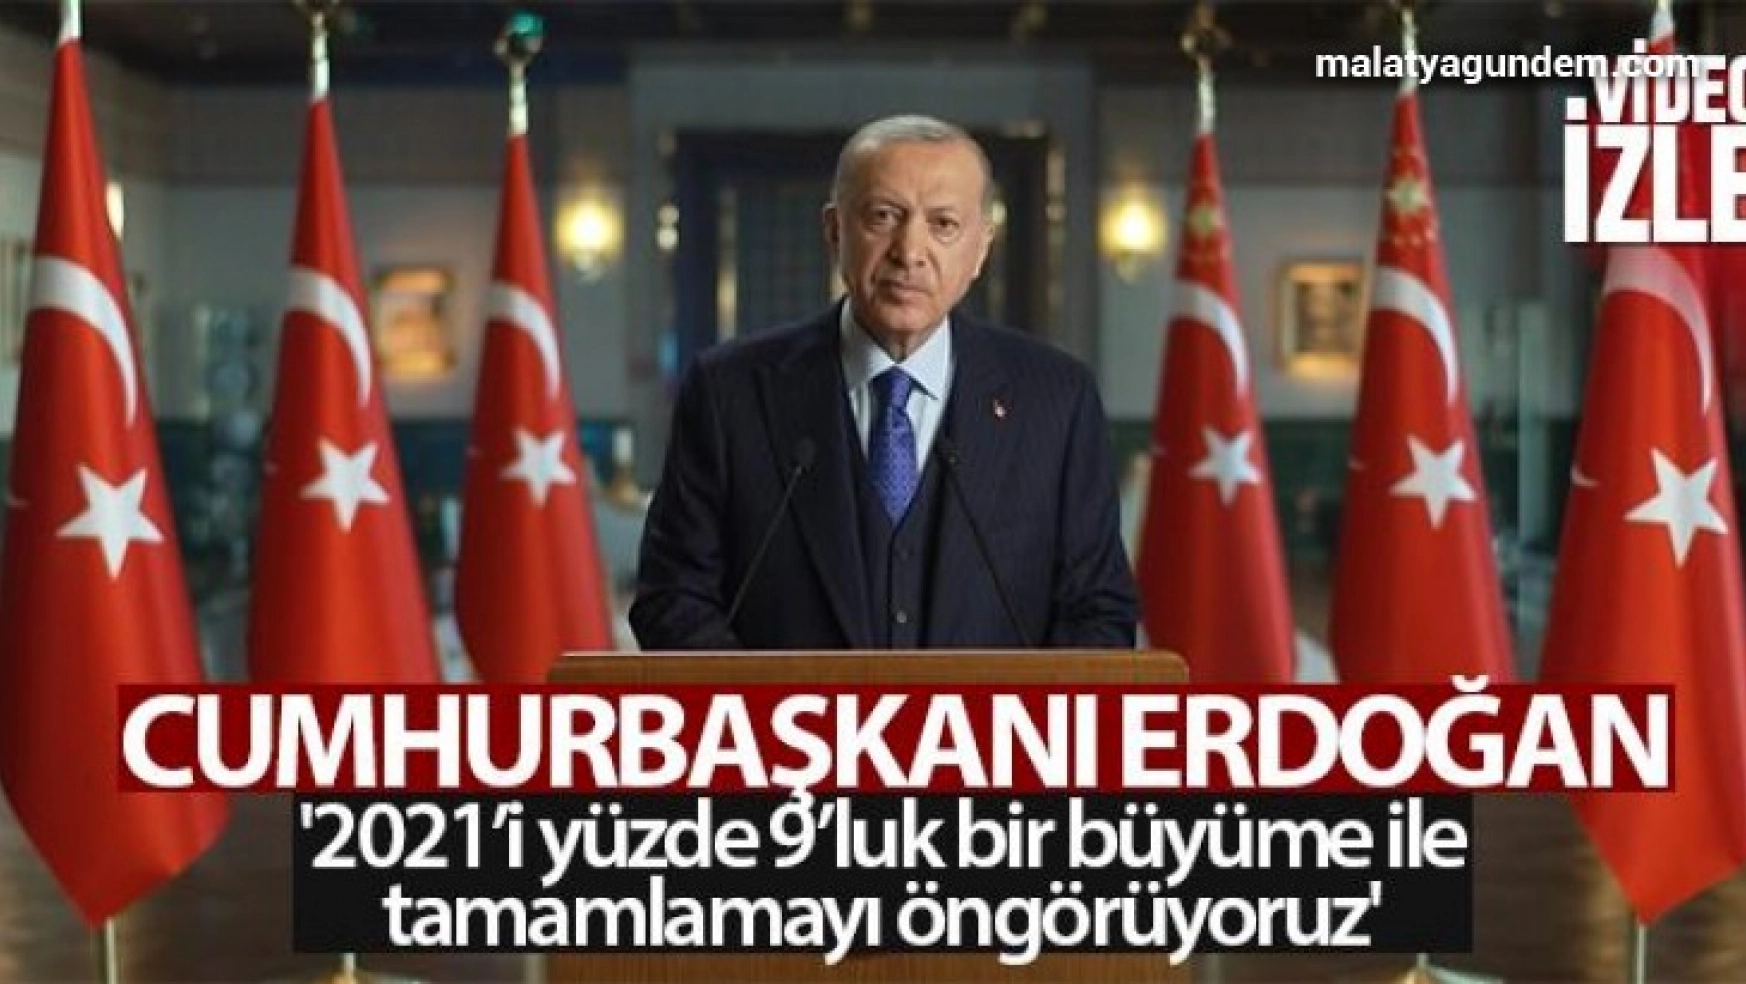 Cumhurbaşkanı Erdoğan: '2021'i yüzde 9'luk bir büyüme ile tamamlamayı öngörüyoruz'